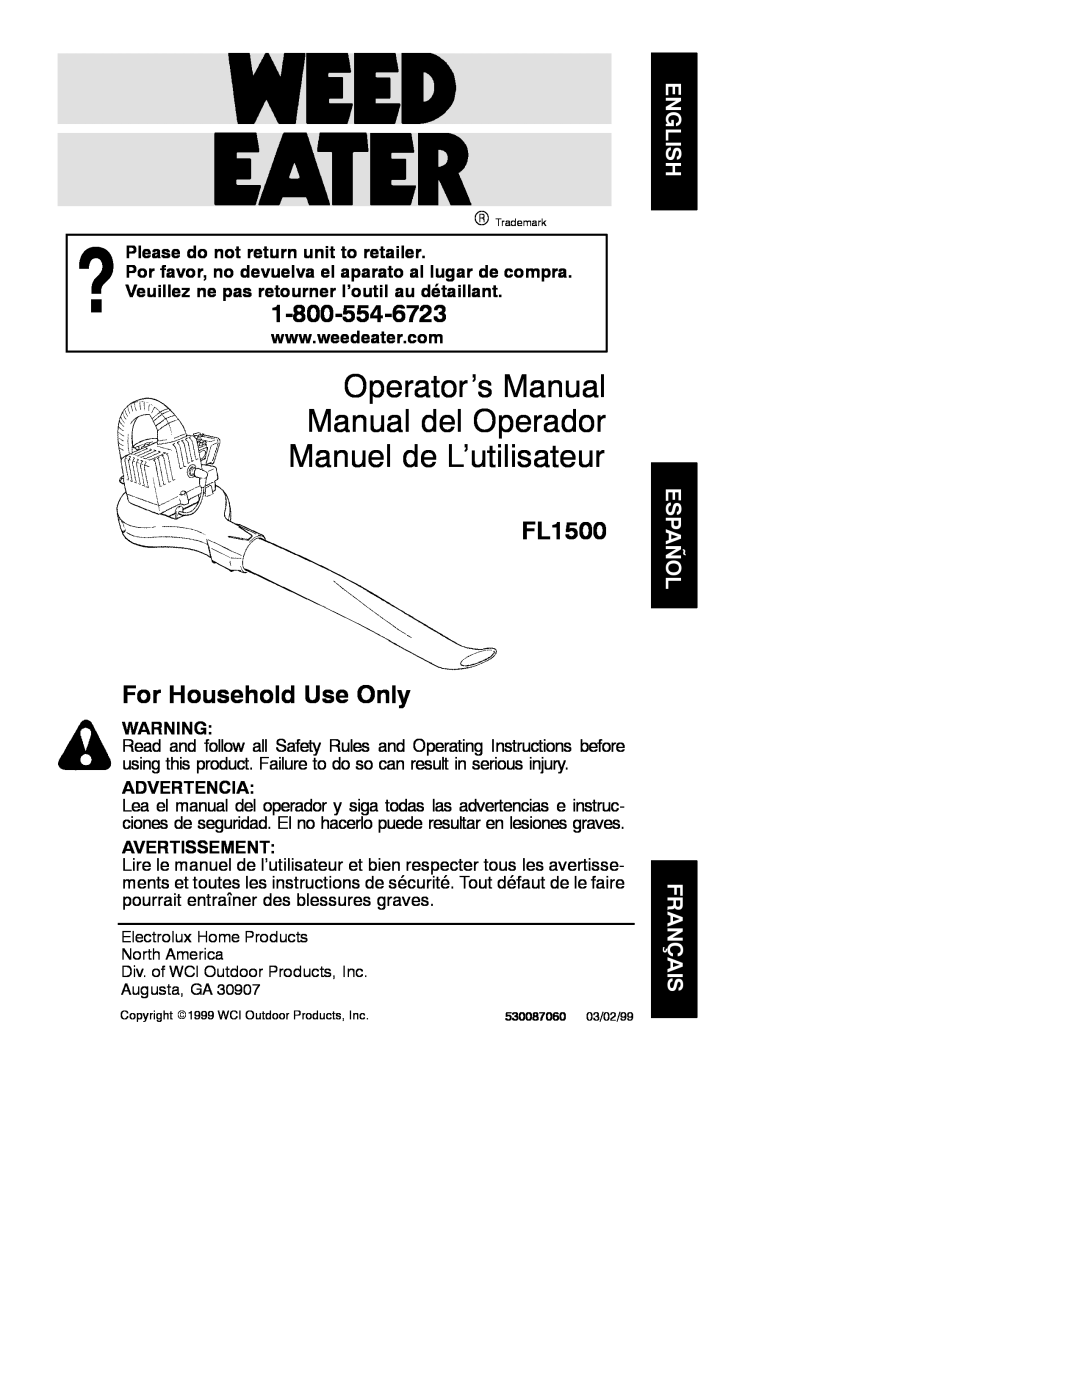 Weed Eater 530087060 operating instructions Operator’s Manual Manual del Operador Manuel de L’utilisateur, Advertencia 